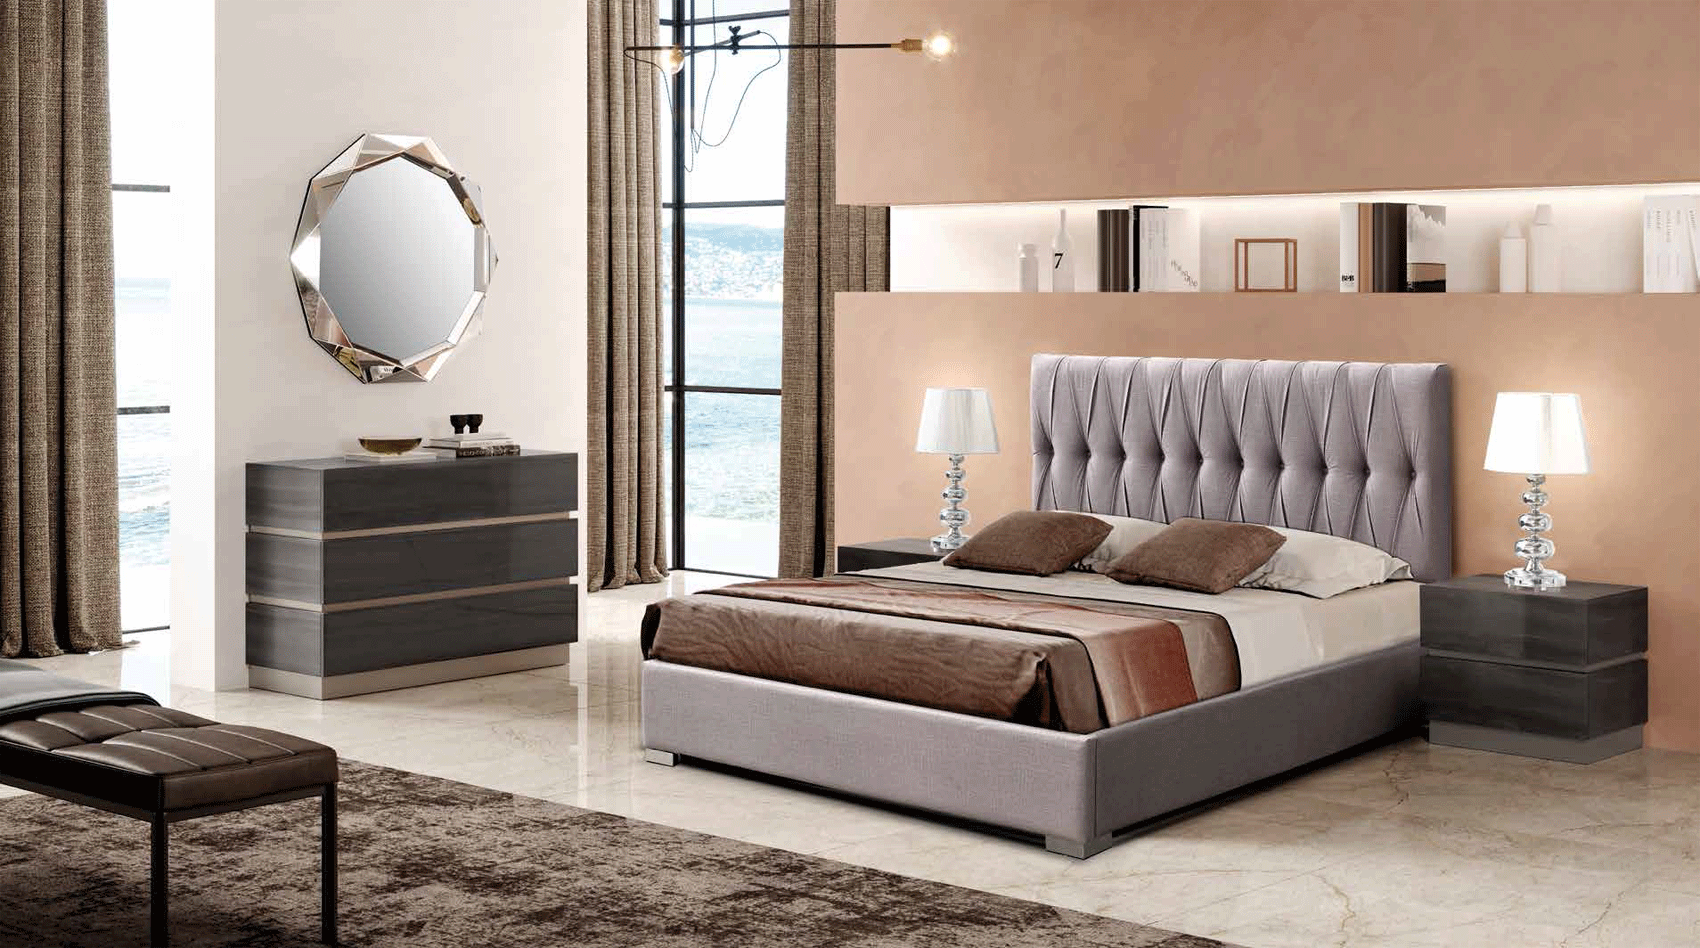 Bedroom Furniture Nightstands 401 Mulan, M-151, C-151, E-413, YP440-N